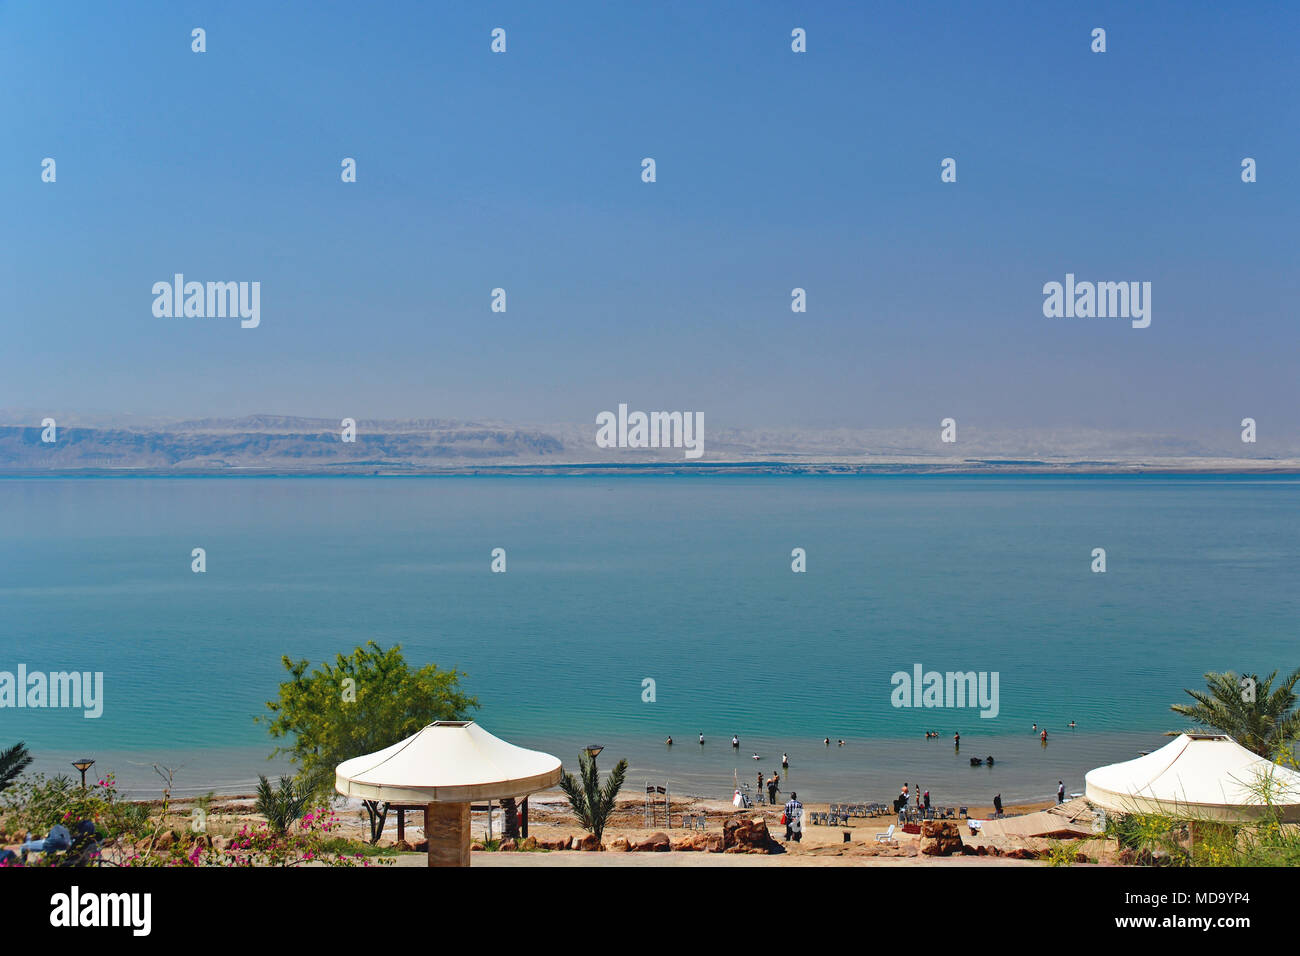 Vue sur la mer Morte à partir de la Jordanie avec Israël à travers l'eau. Banque D'Images